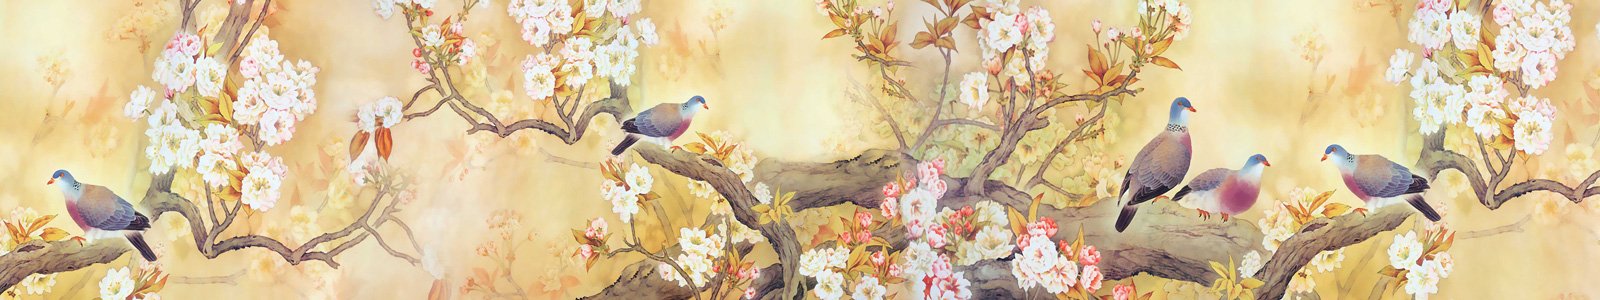 №7420 - Рисунок птичек на ветках цветущих деревьев